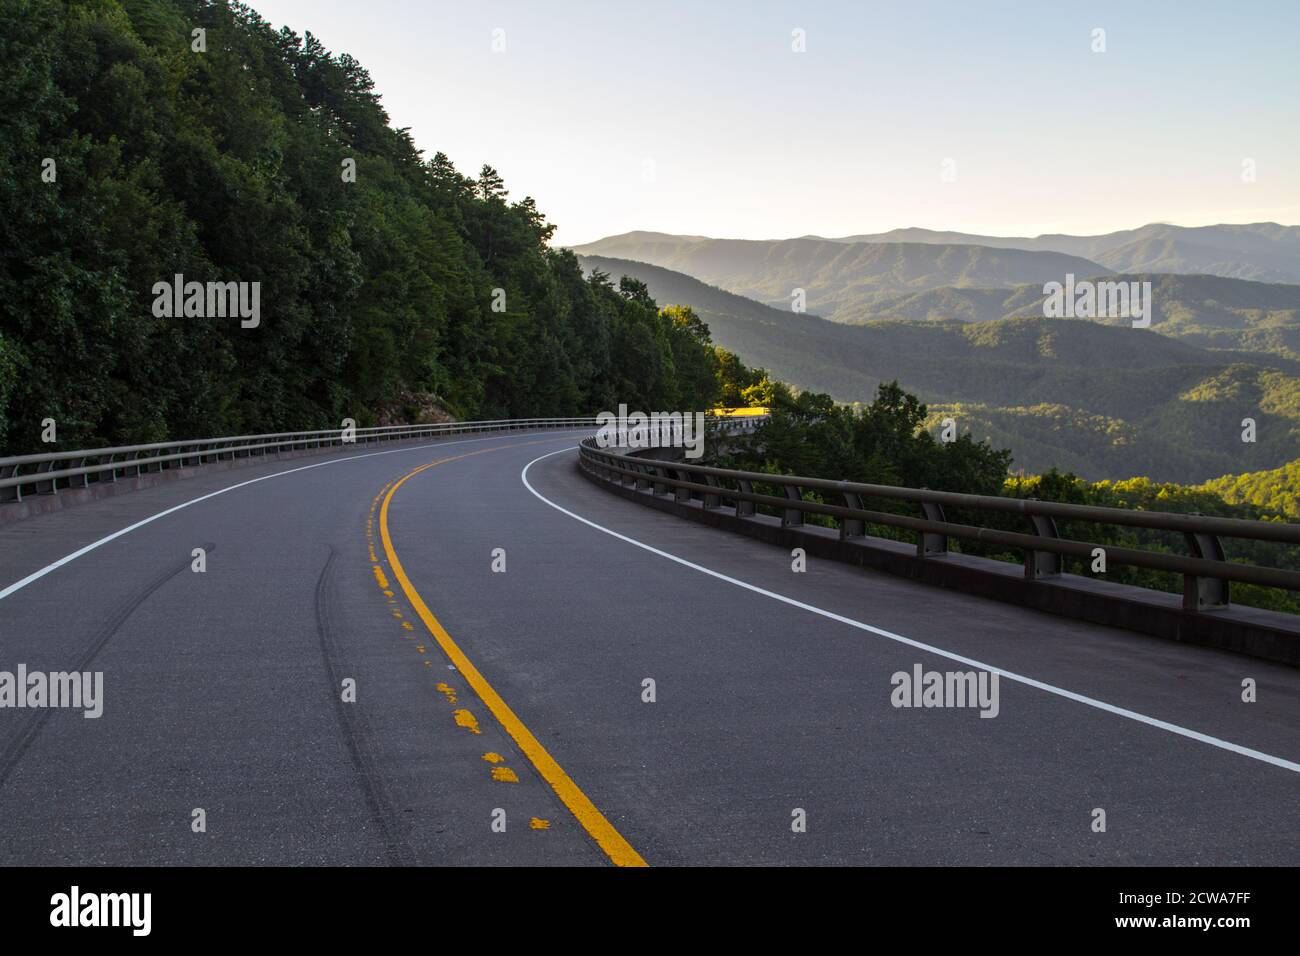 En voiture de Foothills Parkway. Chemin de montagne sinueux le long de la Great Smoky Mountains Foothills Parkway à Wears Valley, Tennessee, États-Unis. Banque D'Images